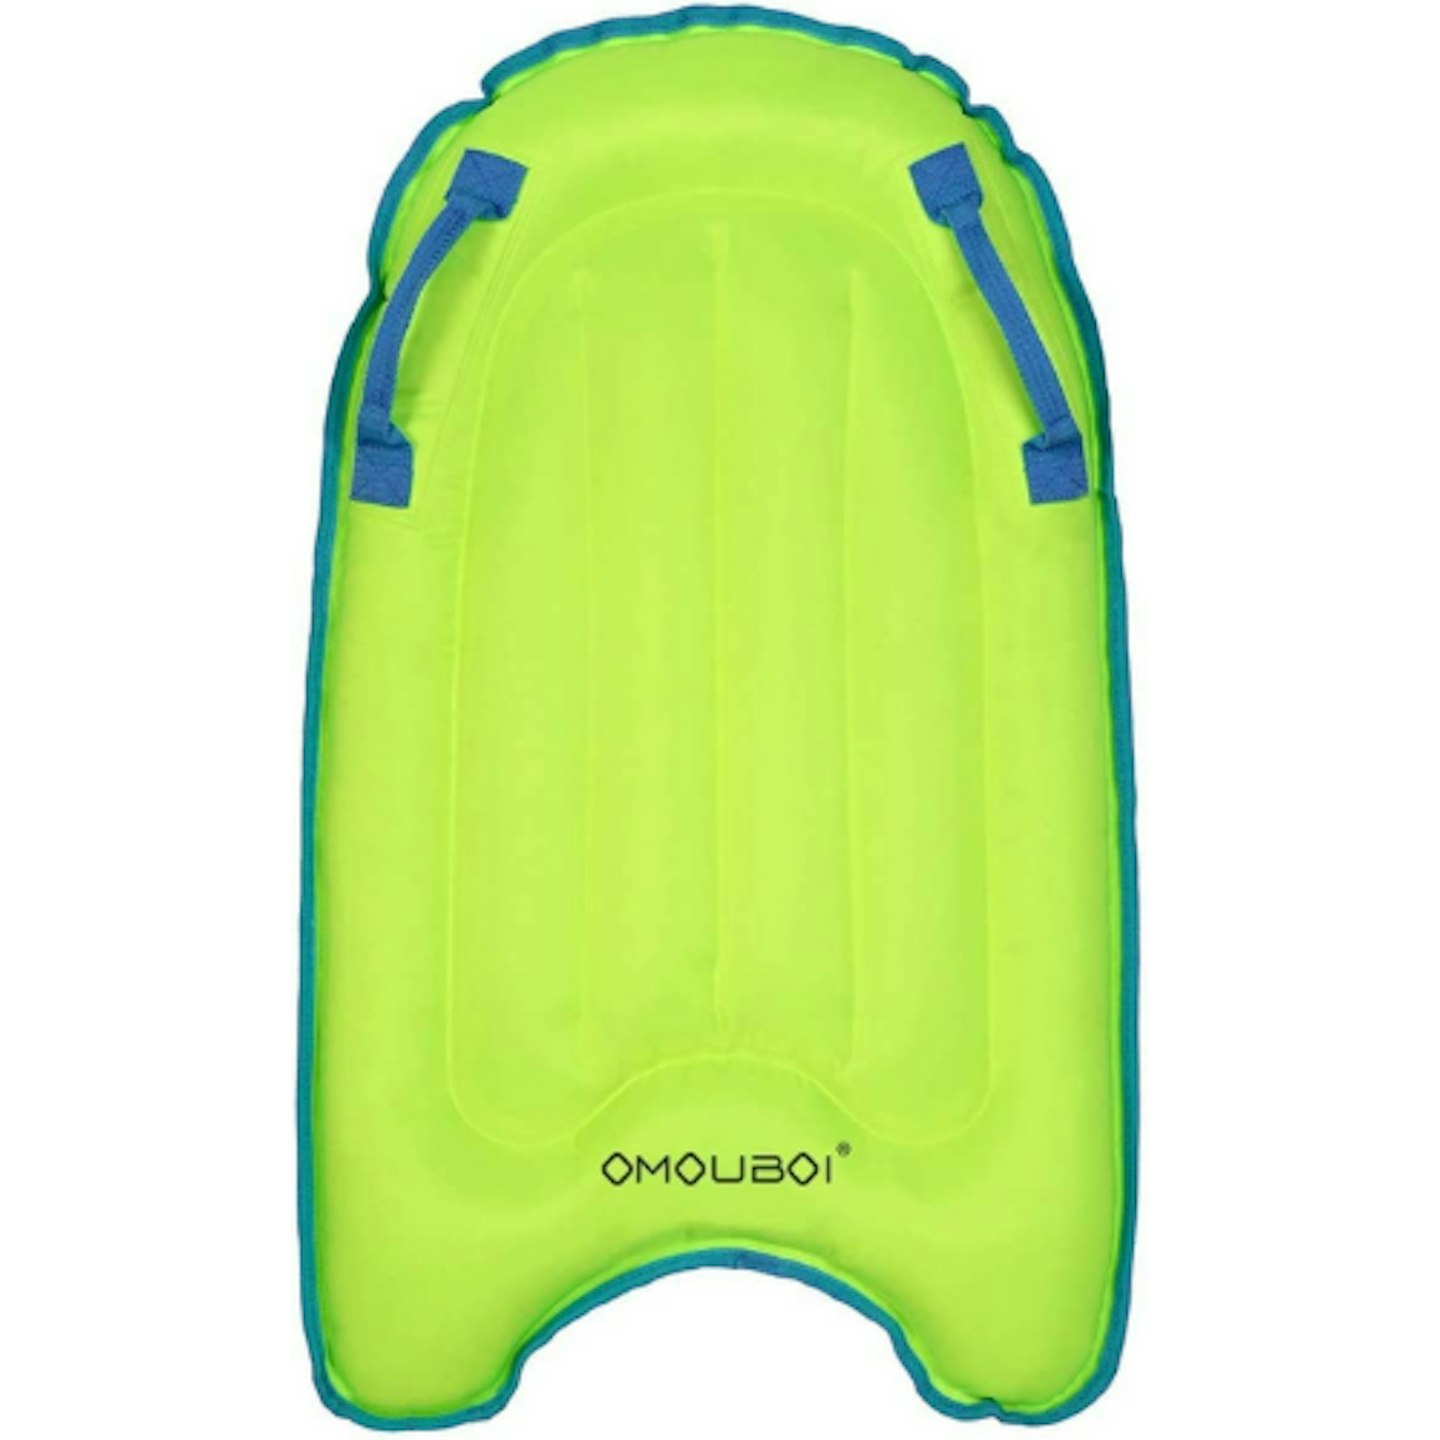 OMOUBOI Inflatable SurfBoard